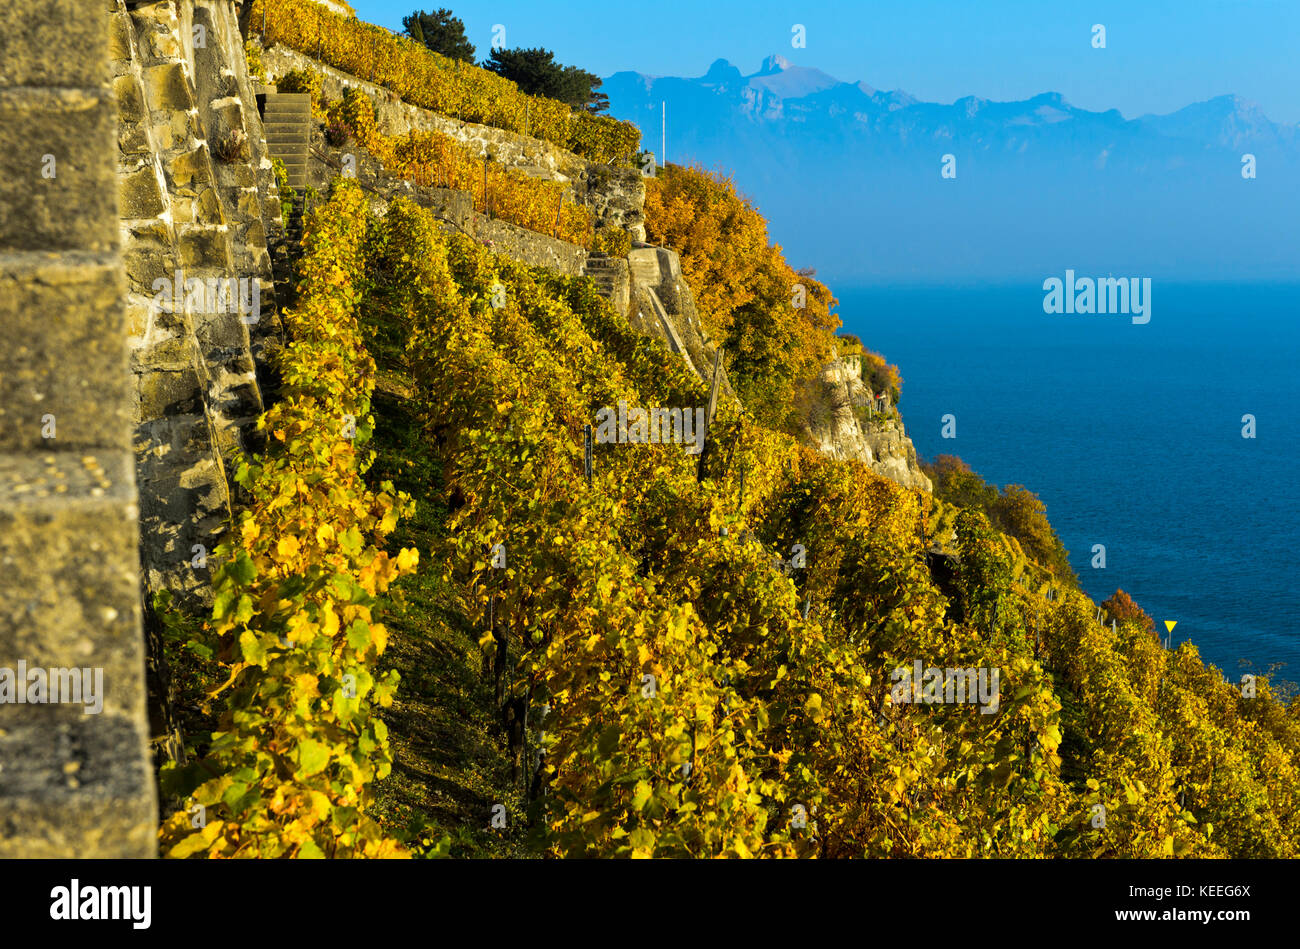 Vignes en terrasse abrupte, culture au-dessus du lac Léman dans la région viticole de Lavaux, Rivaz, Vaud, Suisse Banque D'Images